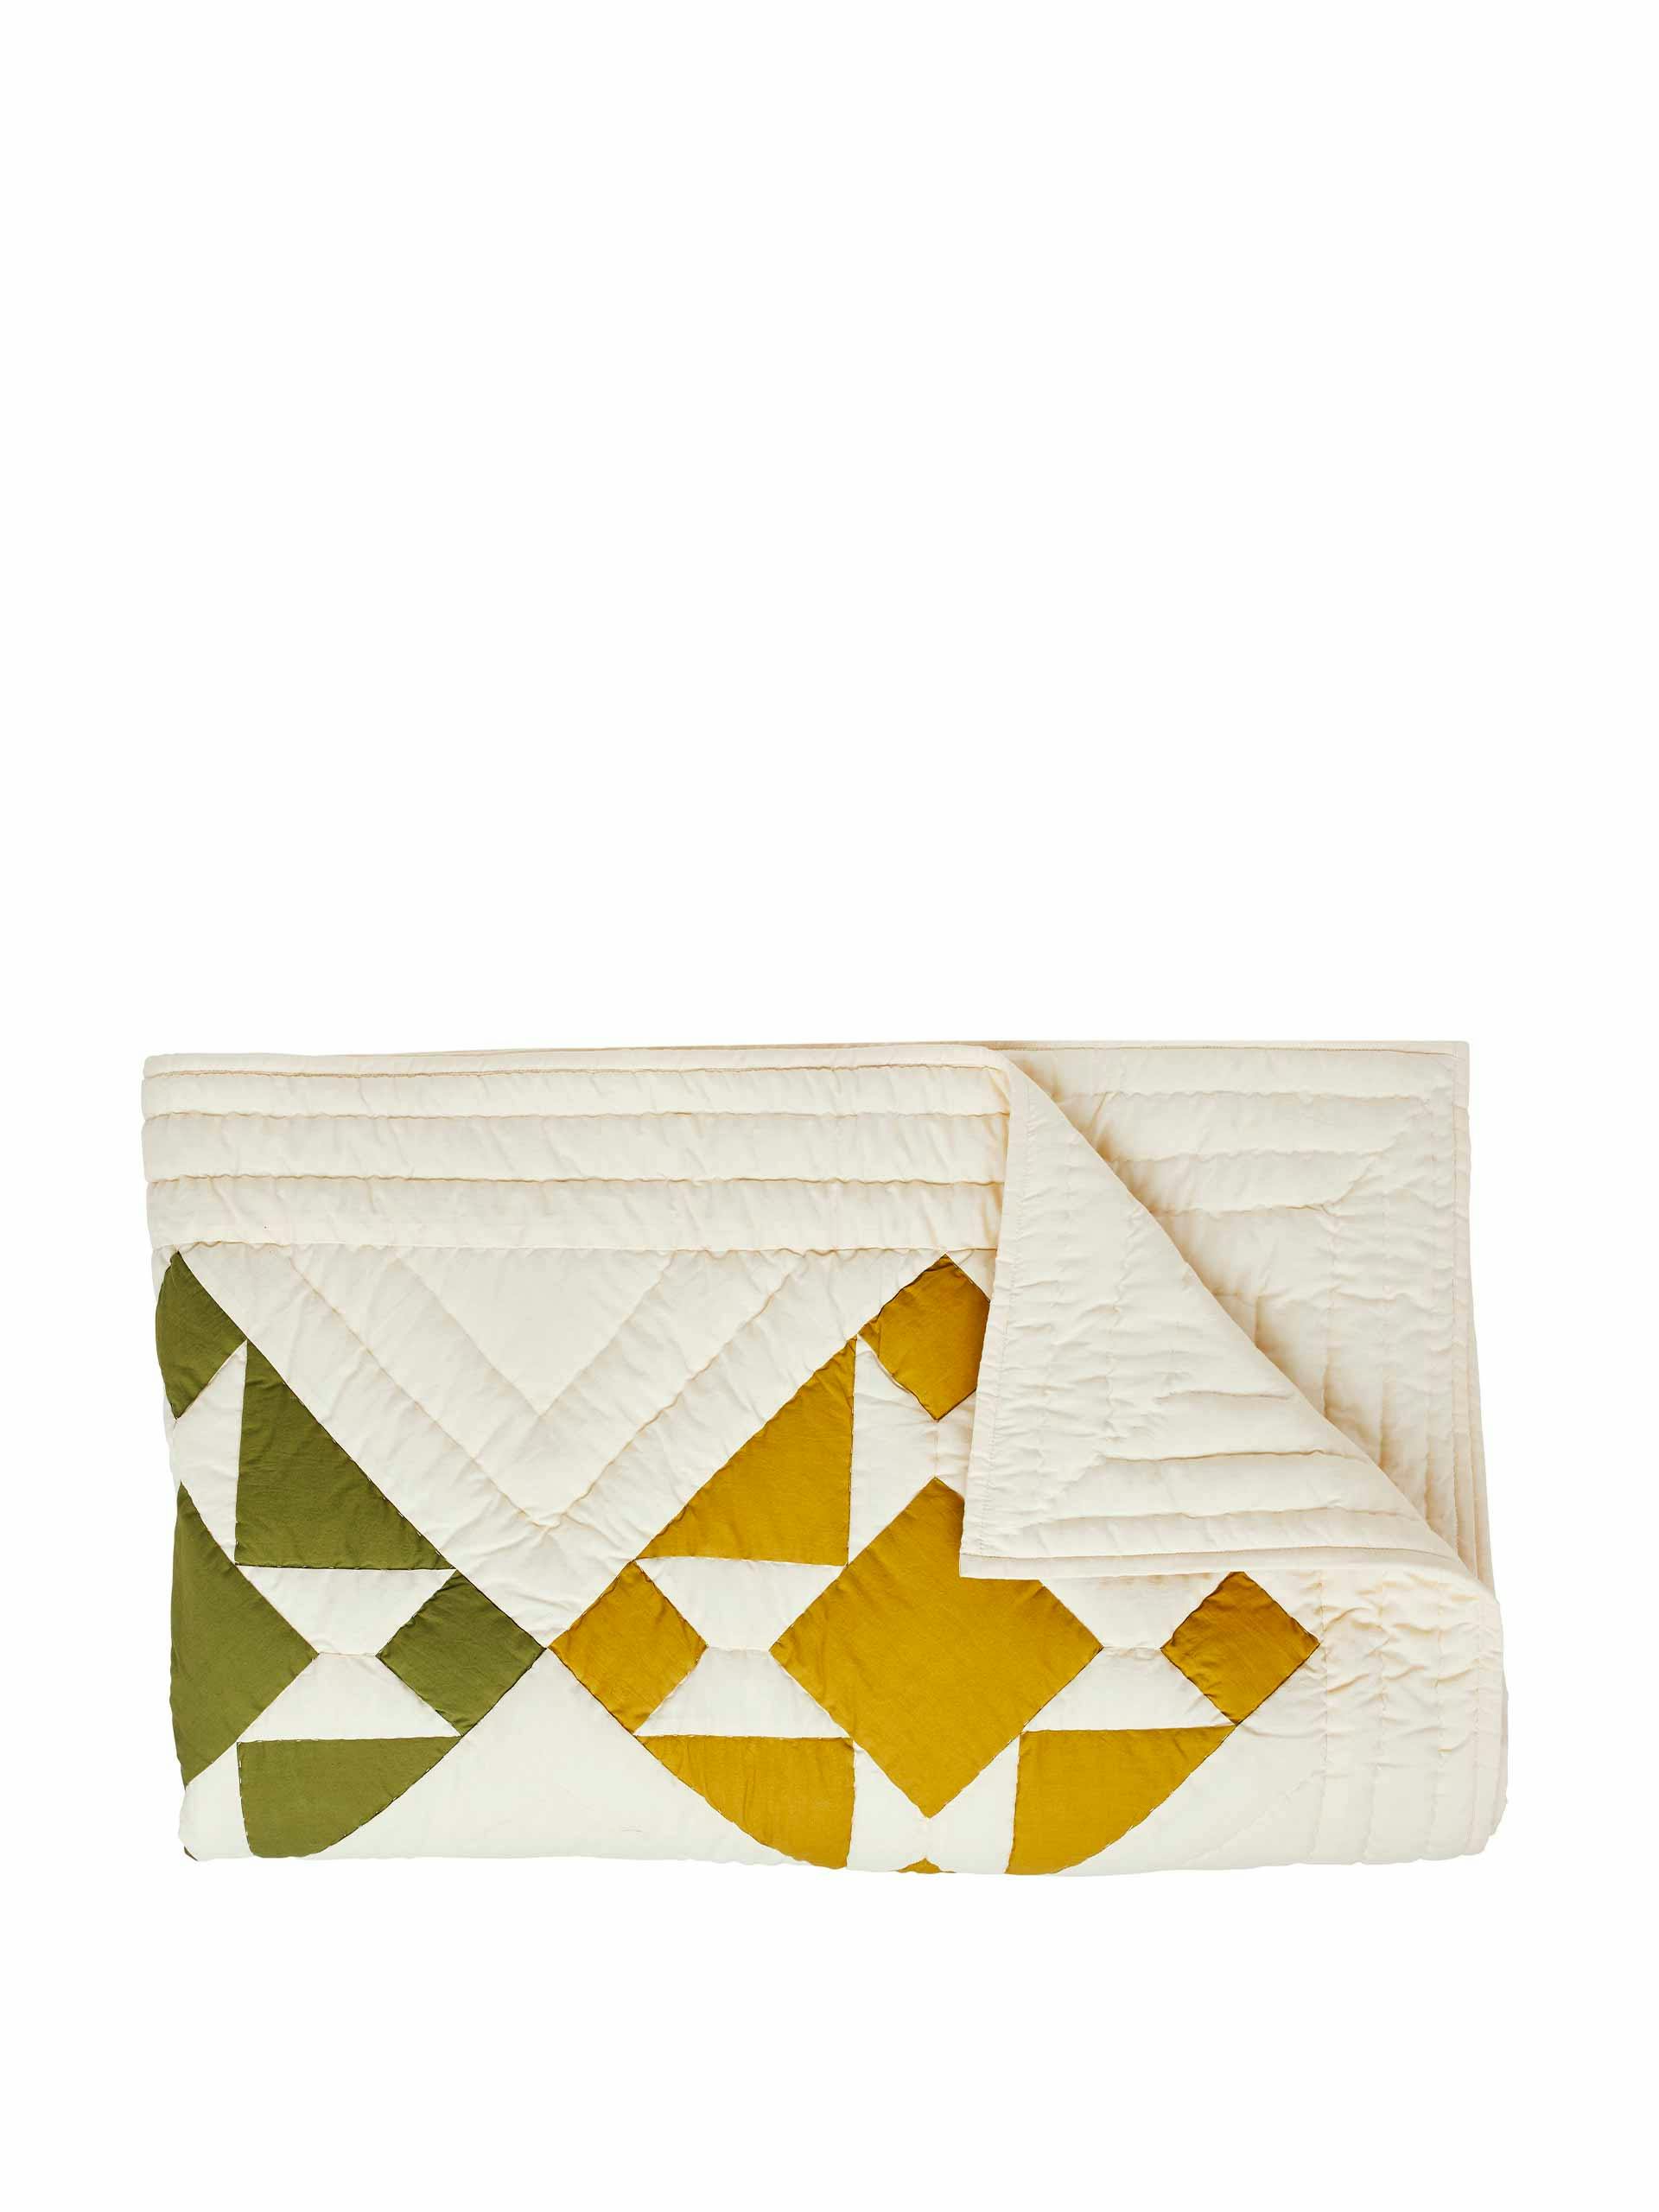 Cotton patchwork quilt